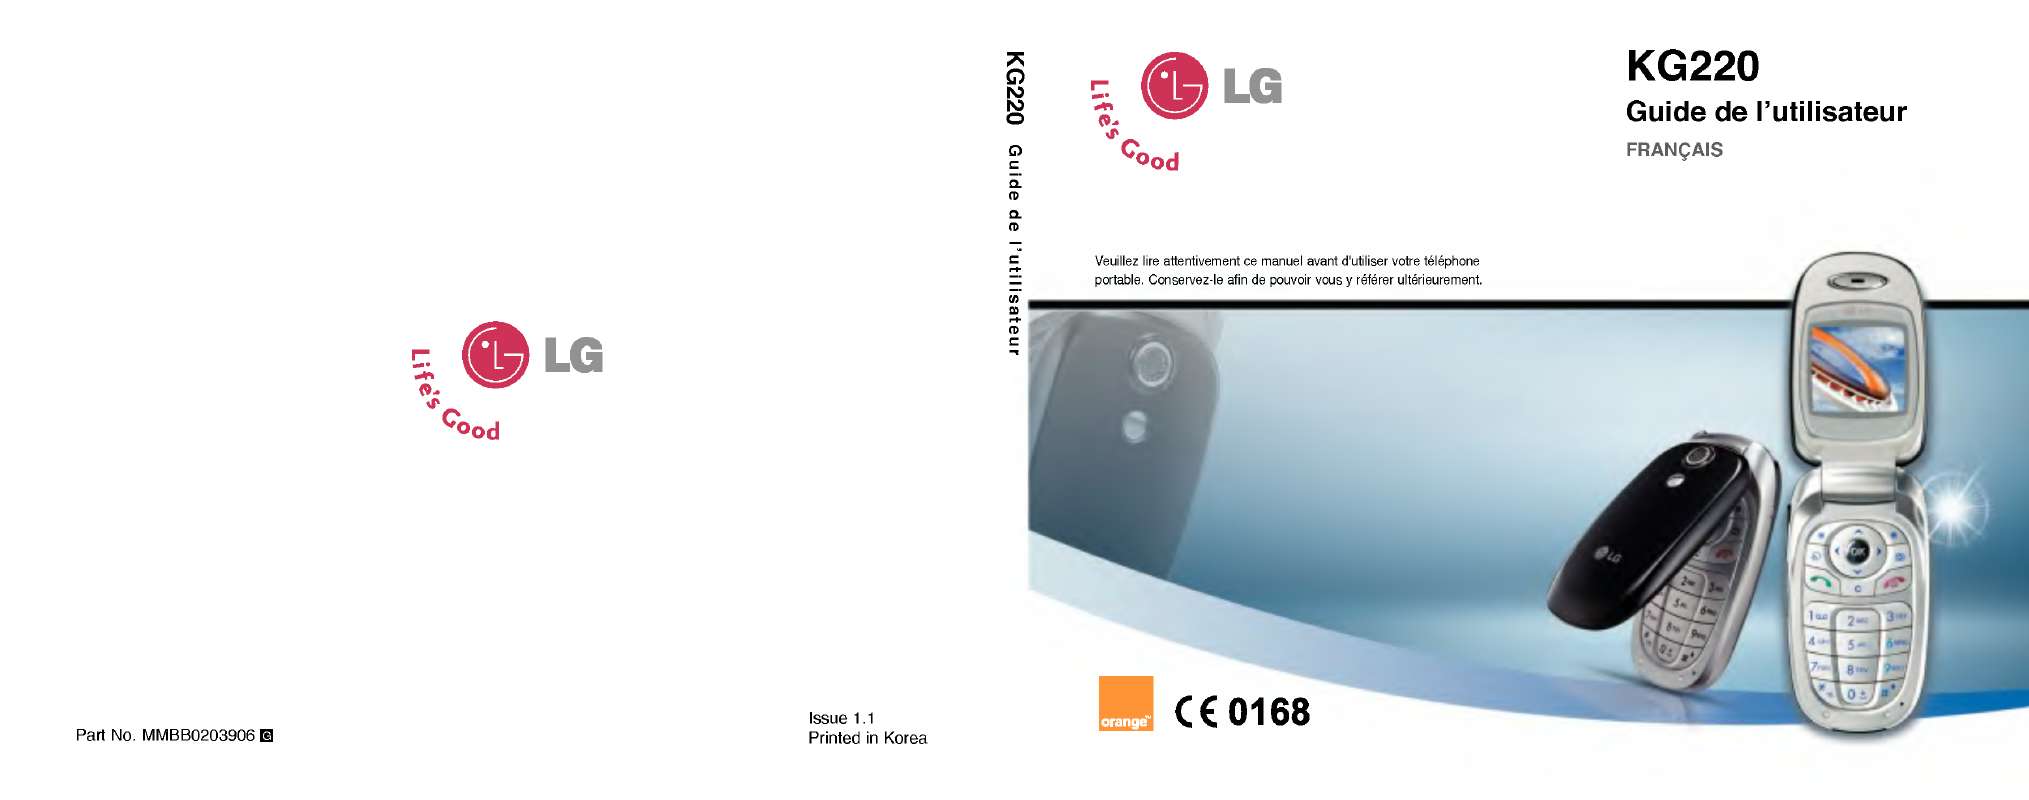 Guide utilisation LG KG220  de la marque LG